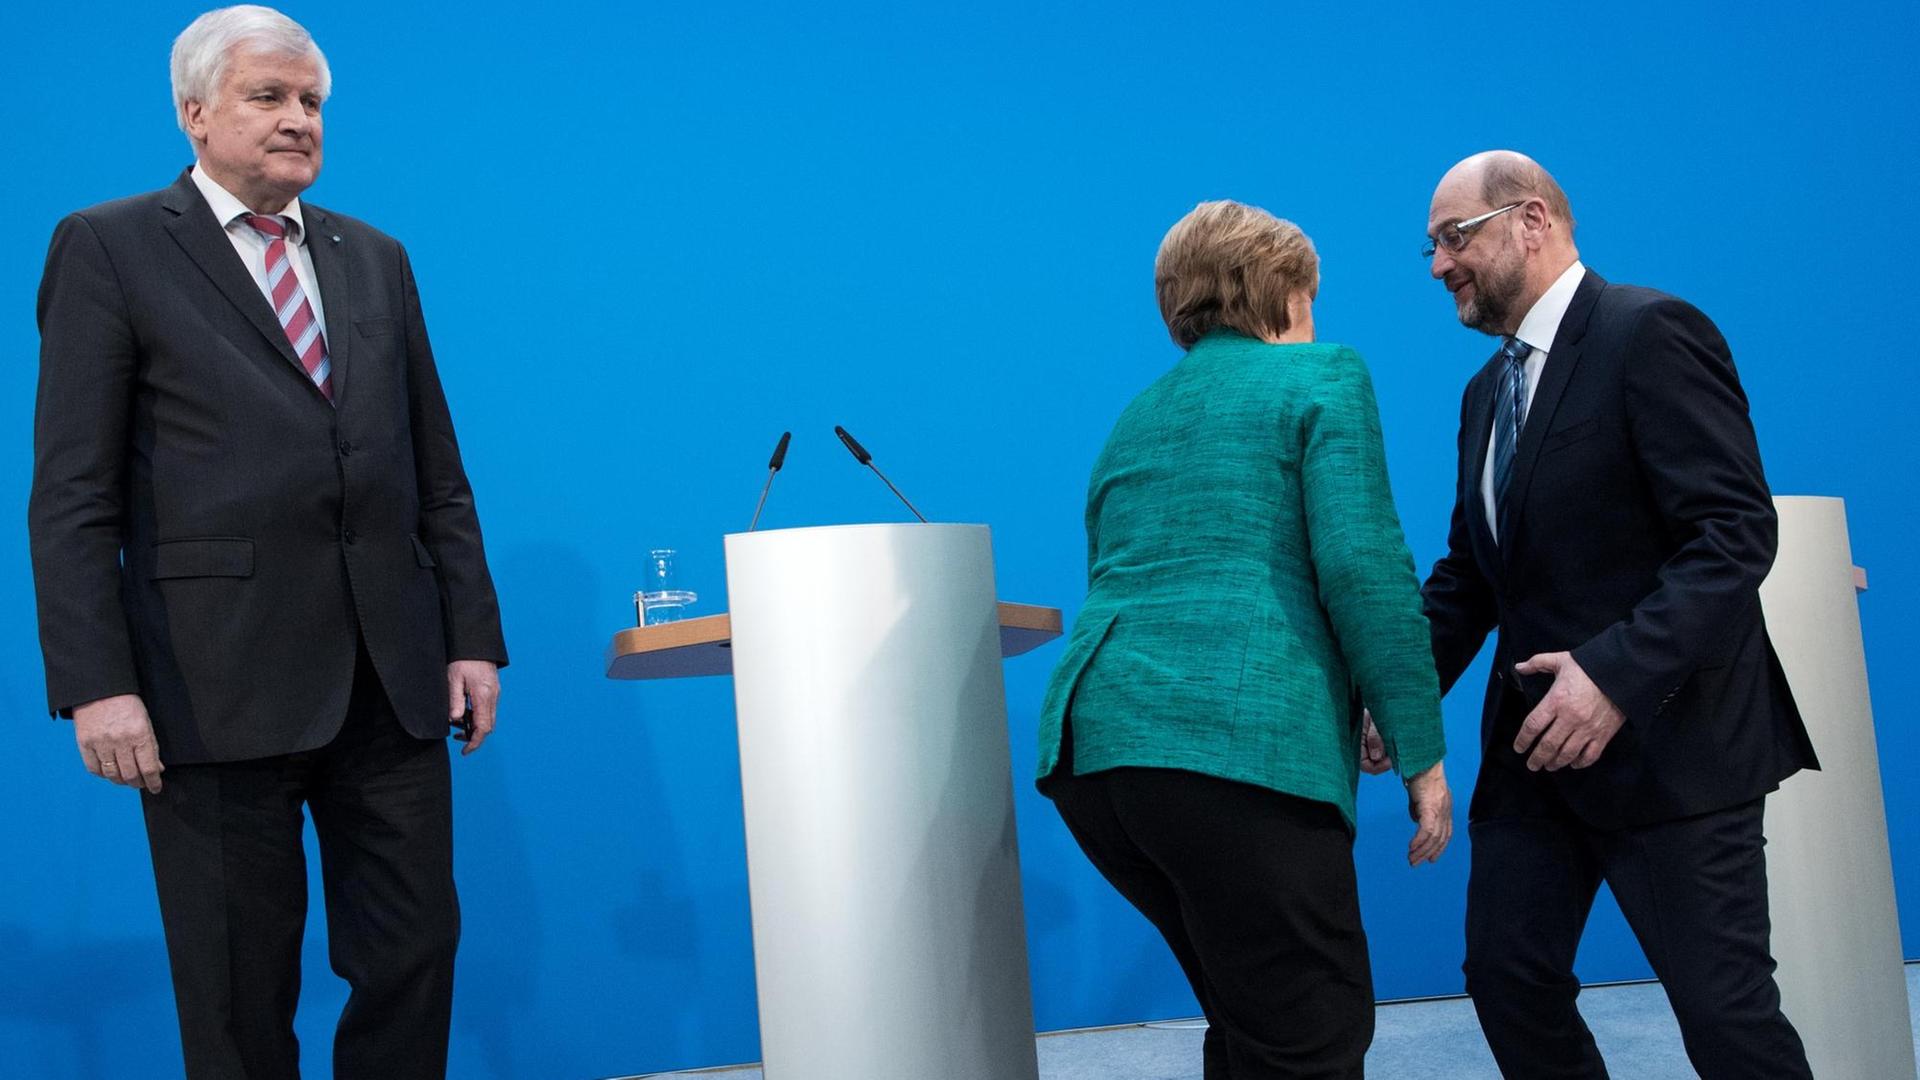 Horst Seehofer, Ministerpräsident von Bayern und Vorsitzender der CSU, Angela Merkel, Bundeskanzlerin und Vorsitzende der CDU und Martin Schulz, Vorsitzender der SPD, äußern sich am Ende der Koalitionsverhandlungen in der CDU-Parteizentrale, dem Konrad-Adenauer-Haus.